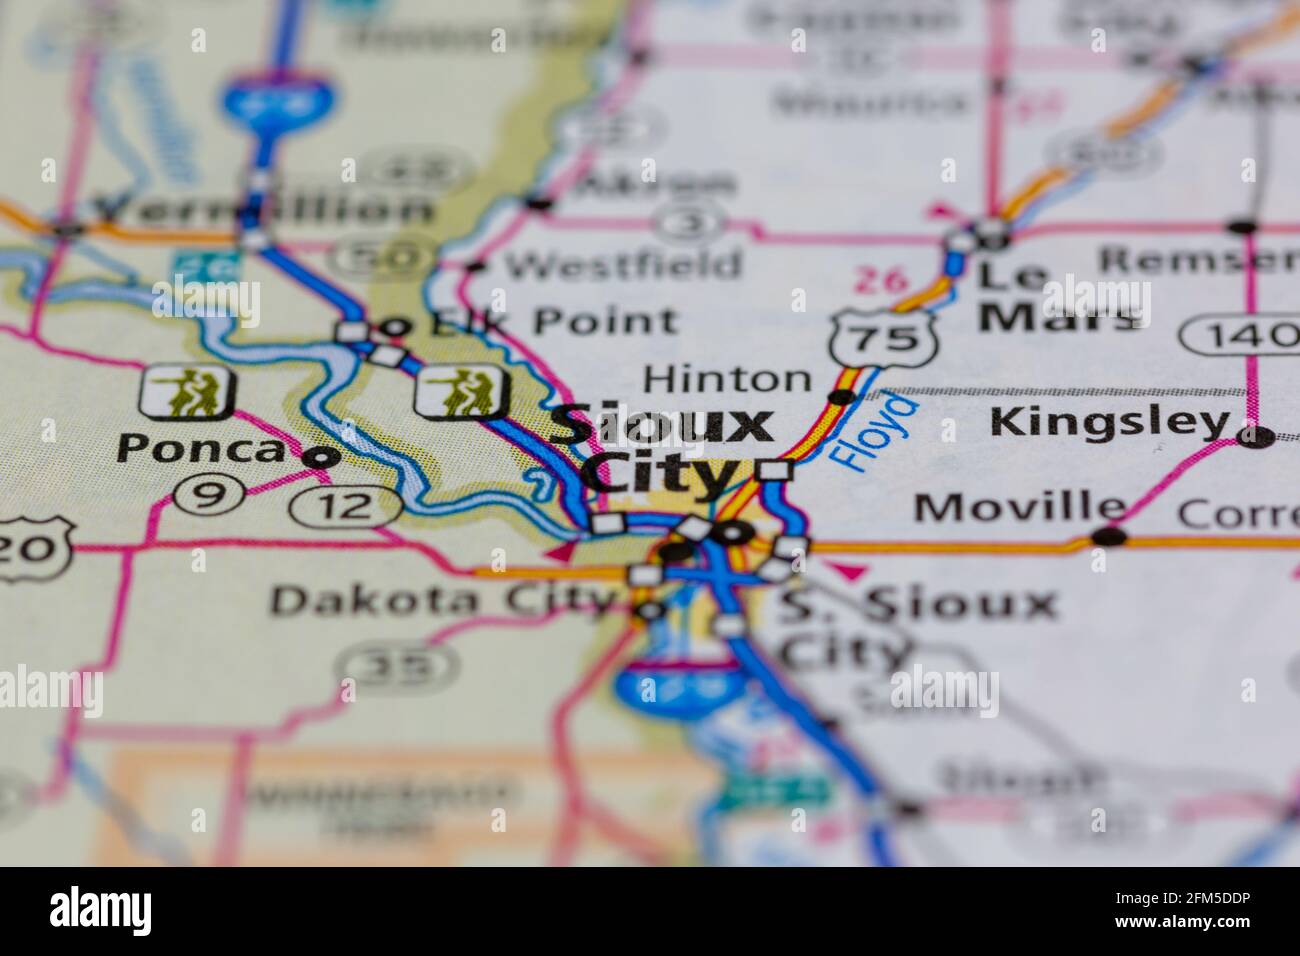 Sioux City Iowa USA sur une carte géographique ou carte routière Banque D'Images